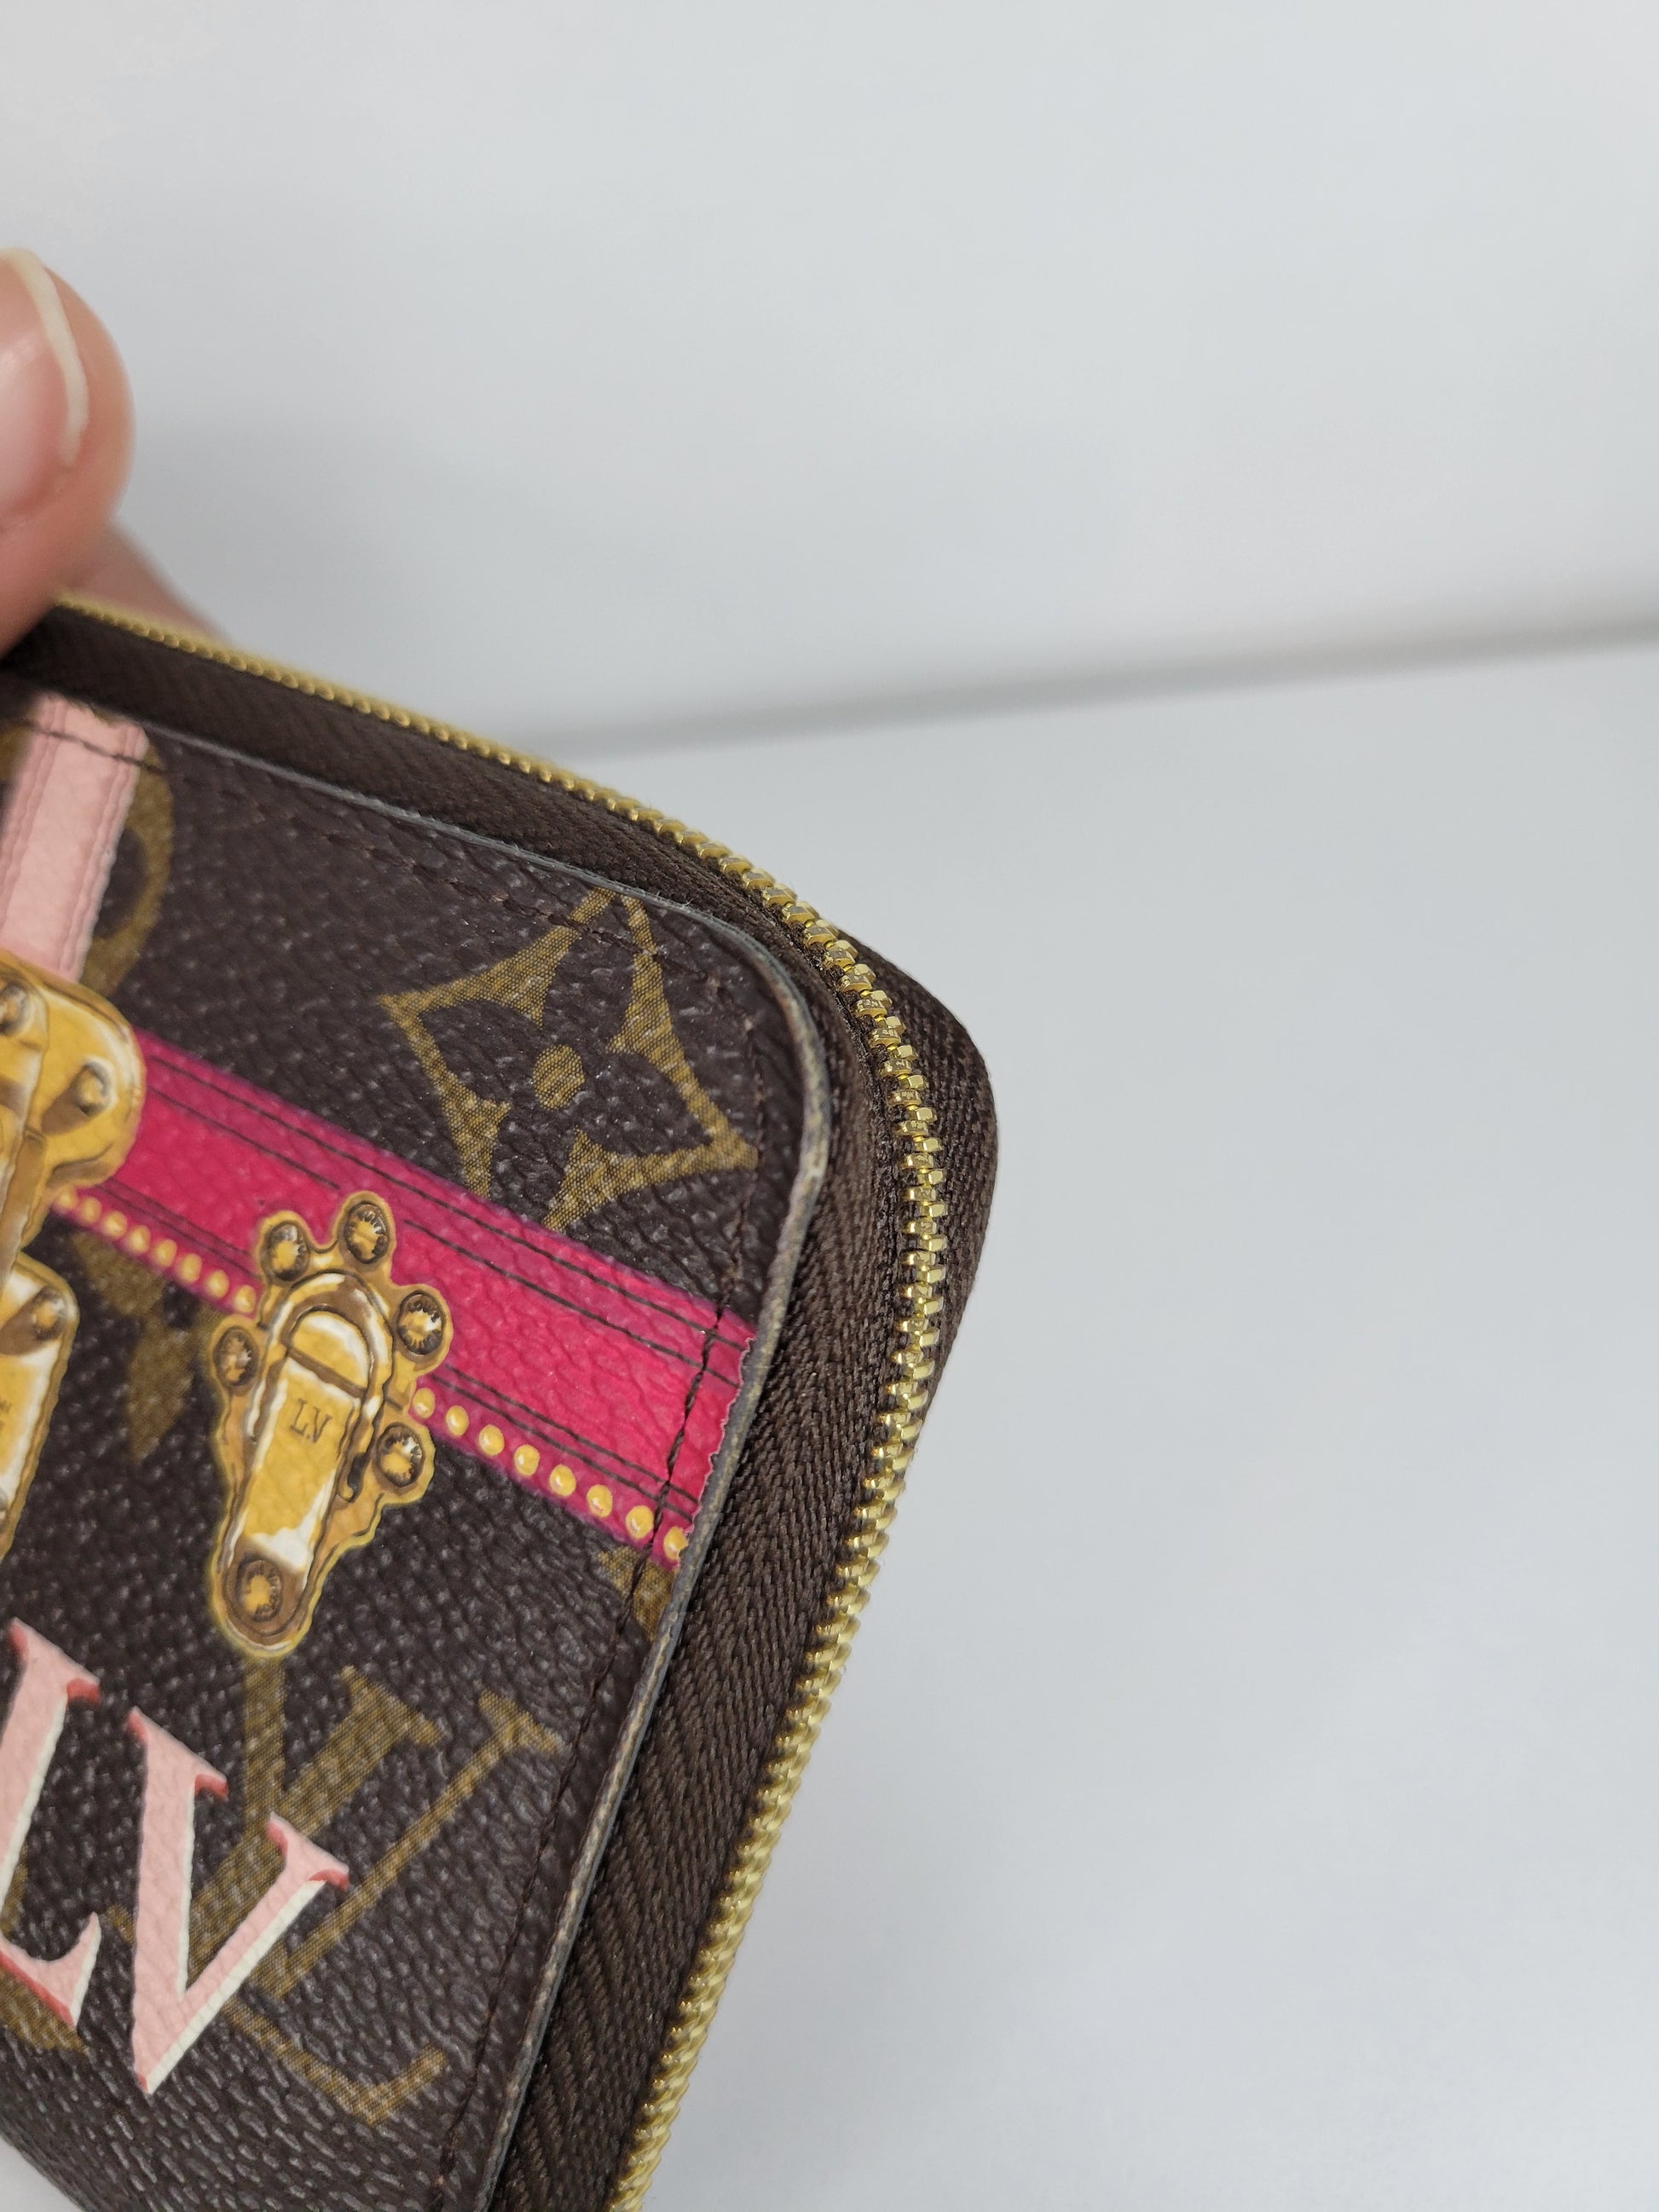 Louis Vuitton Monogram Summer Trunks Small Zippered Wallet